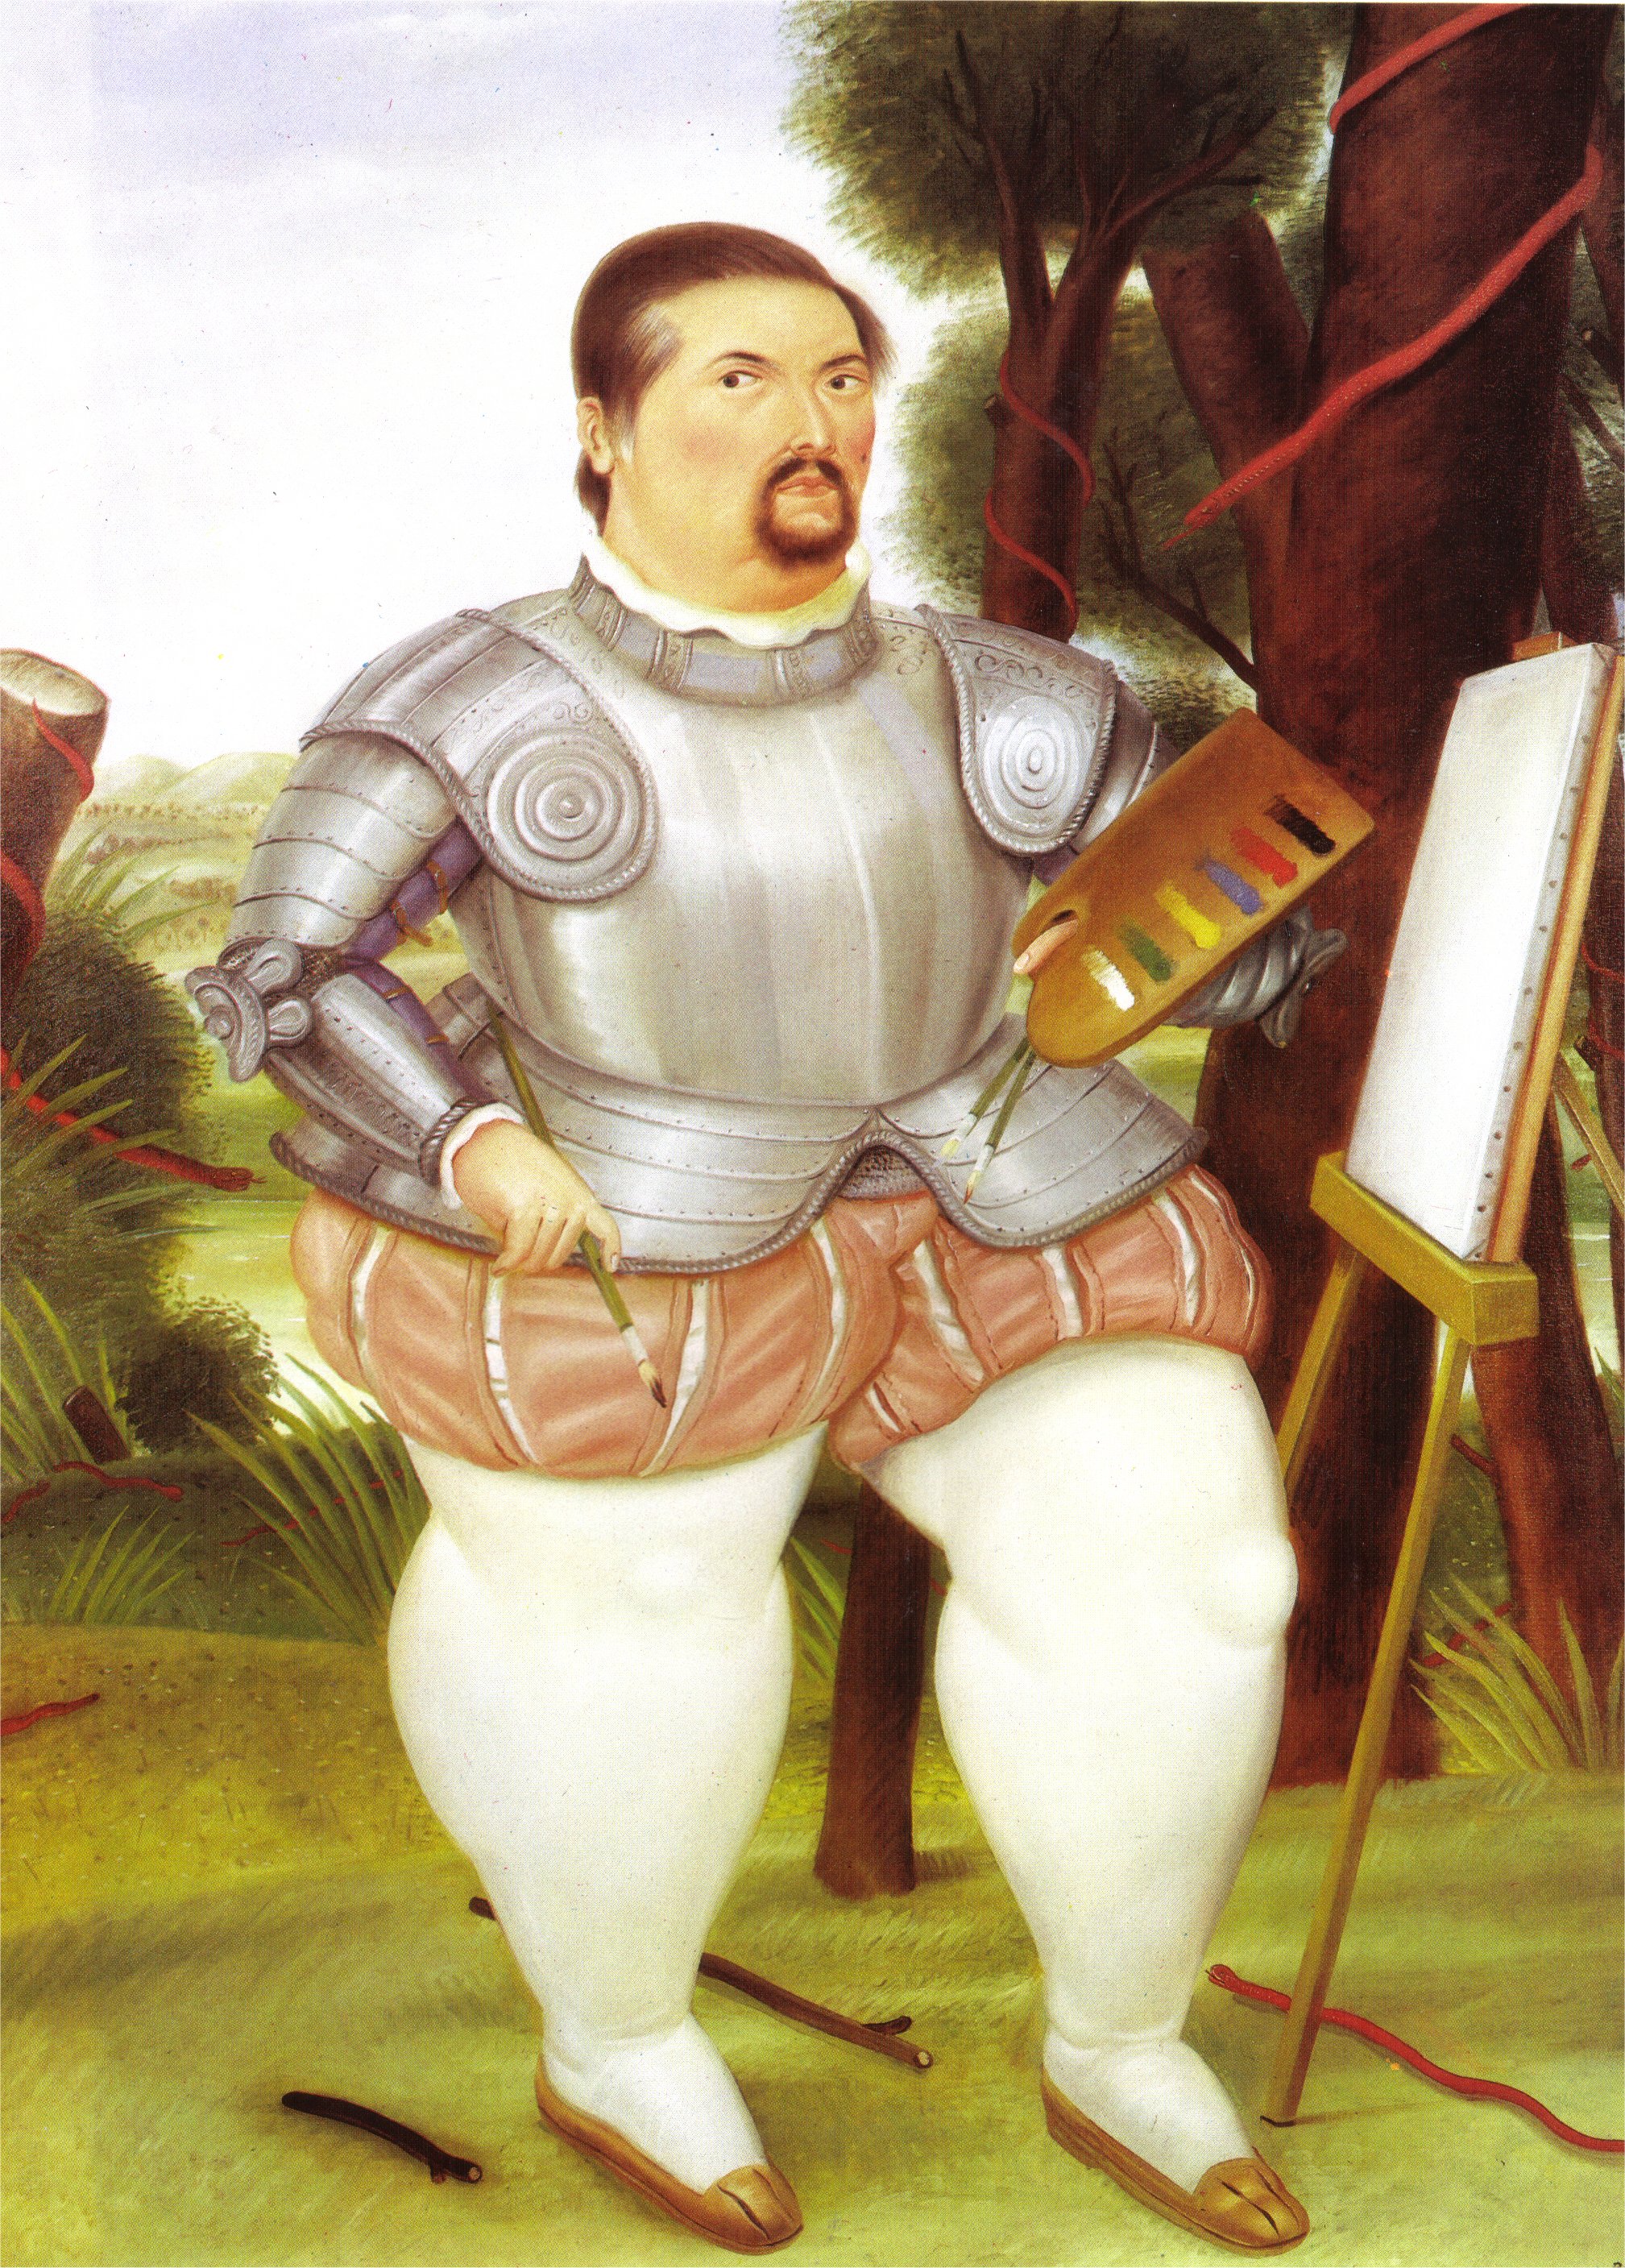 Self-Portrait as Spanish Conquistador (1986).